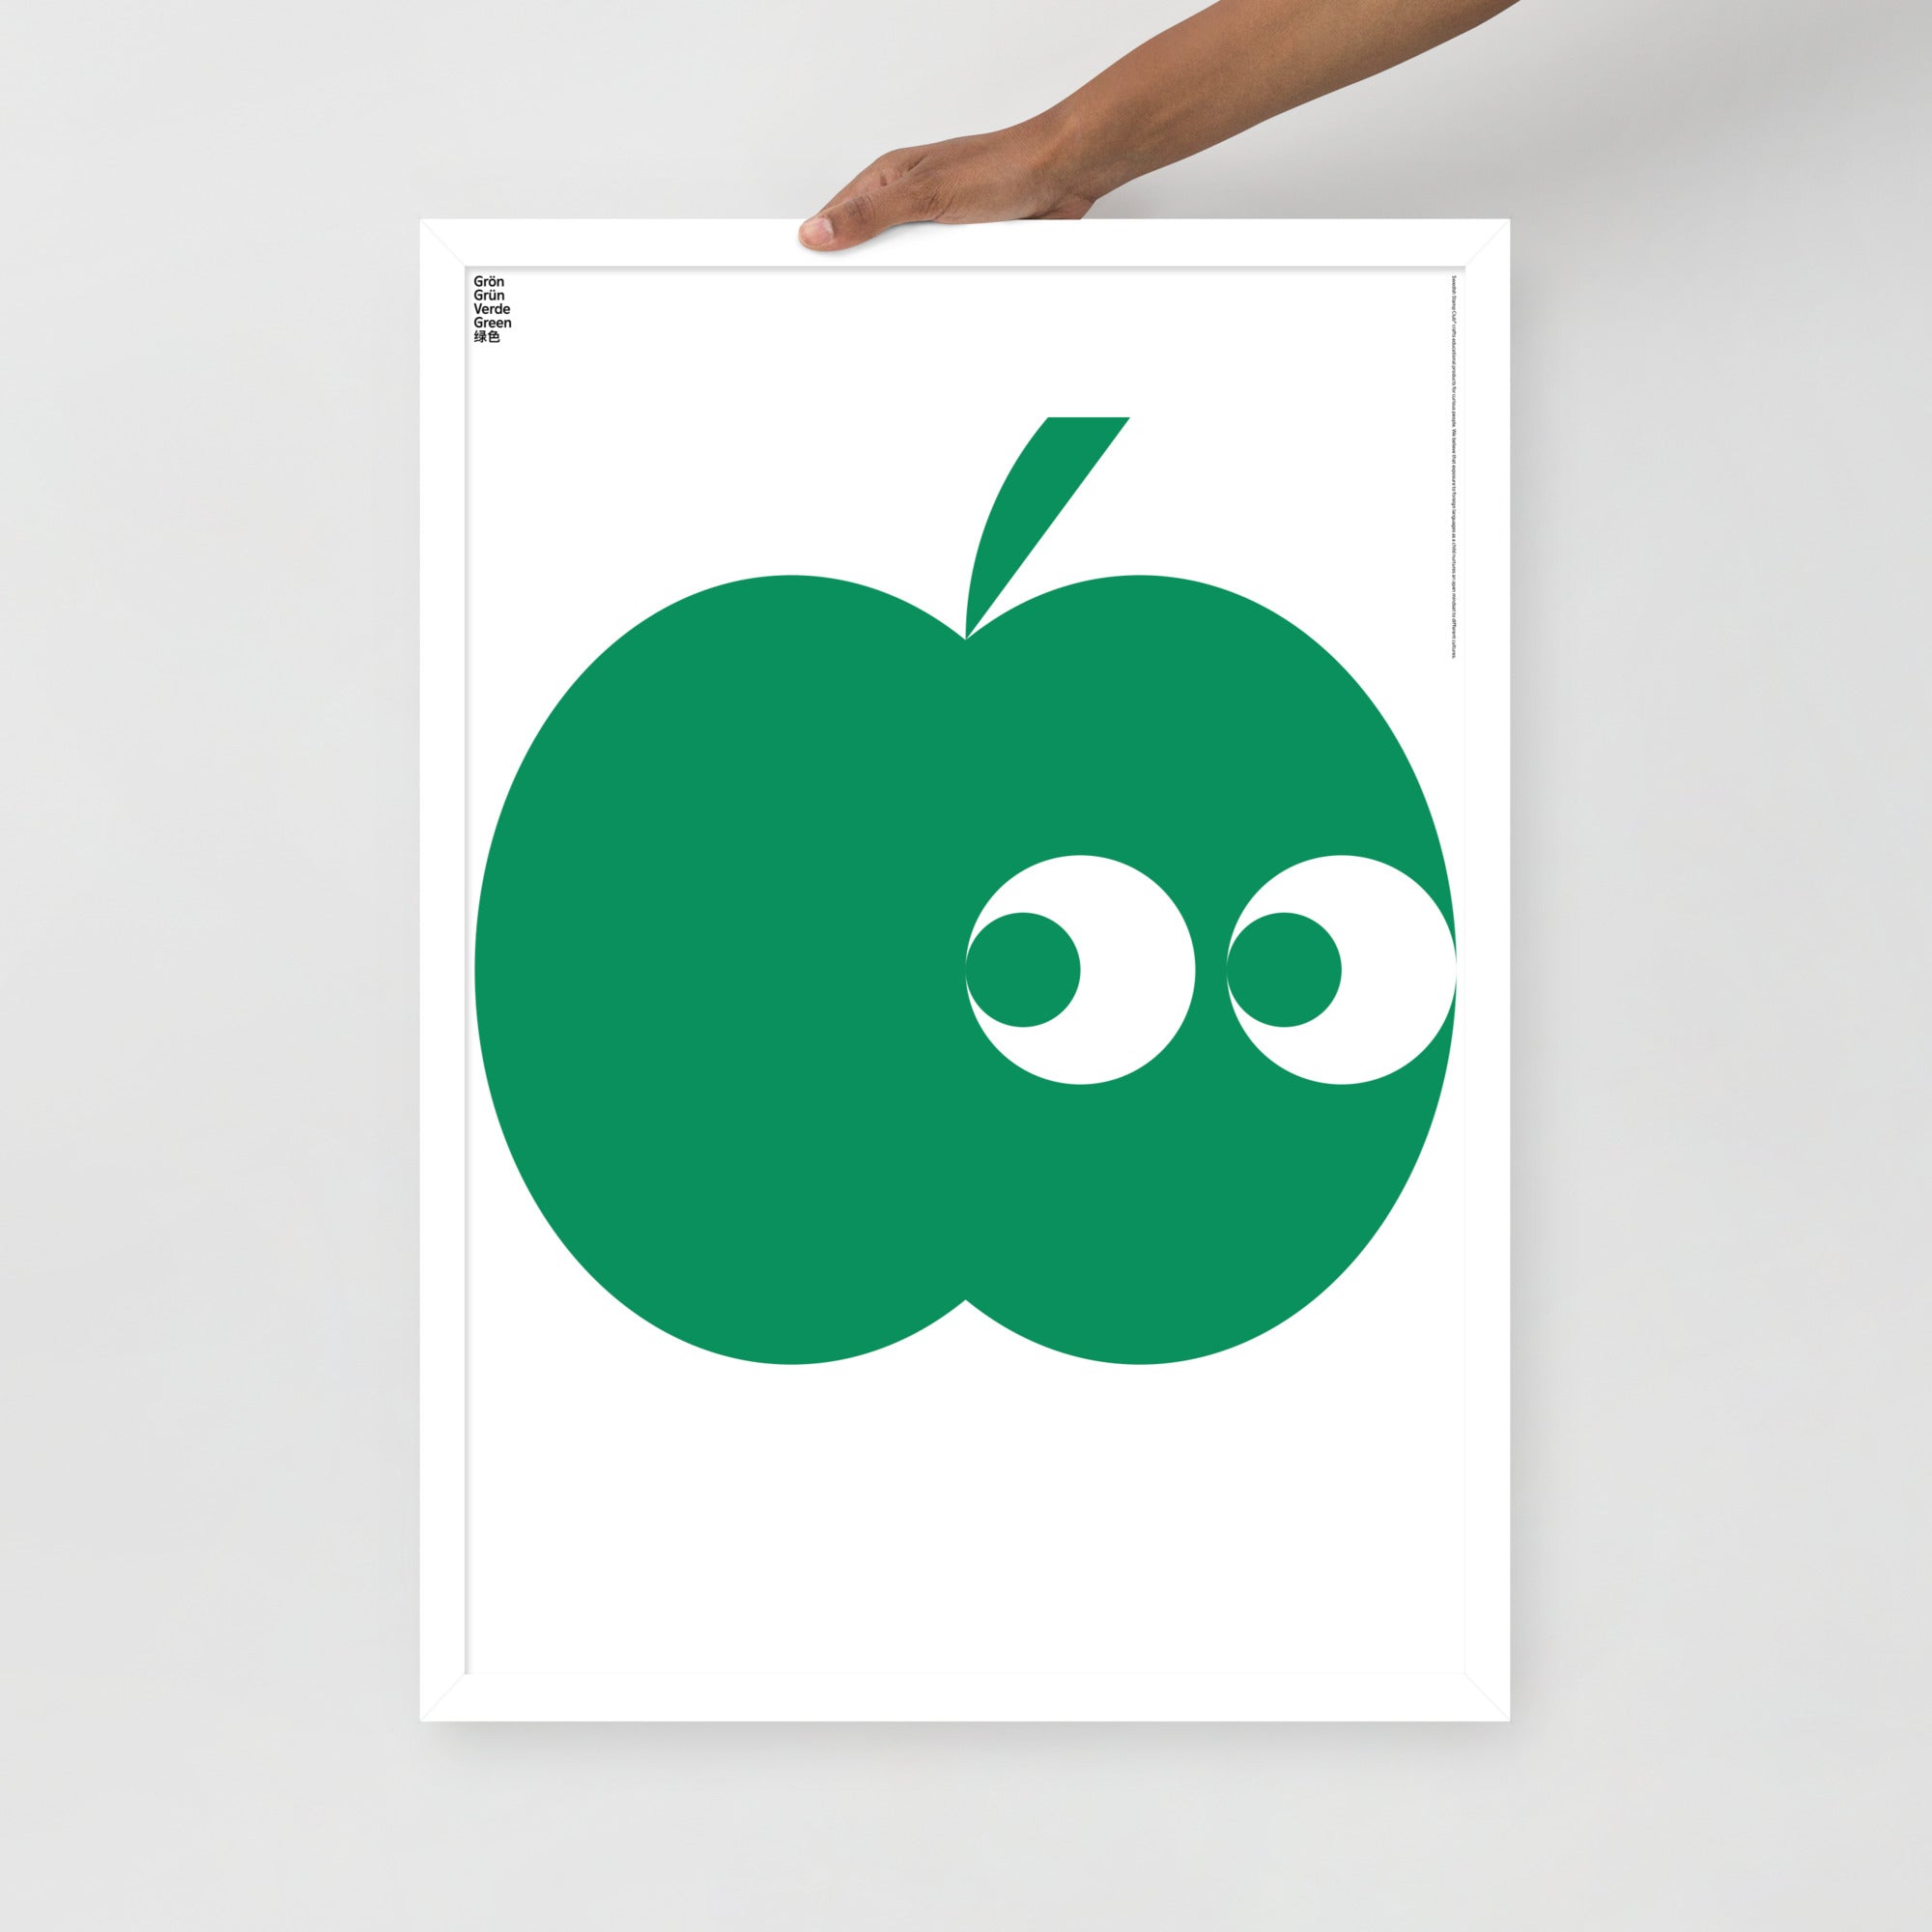 Framed Green Apple Poster